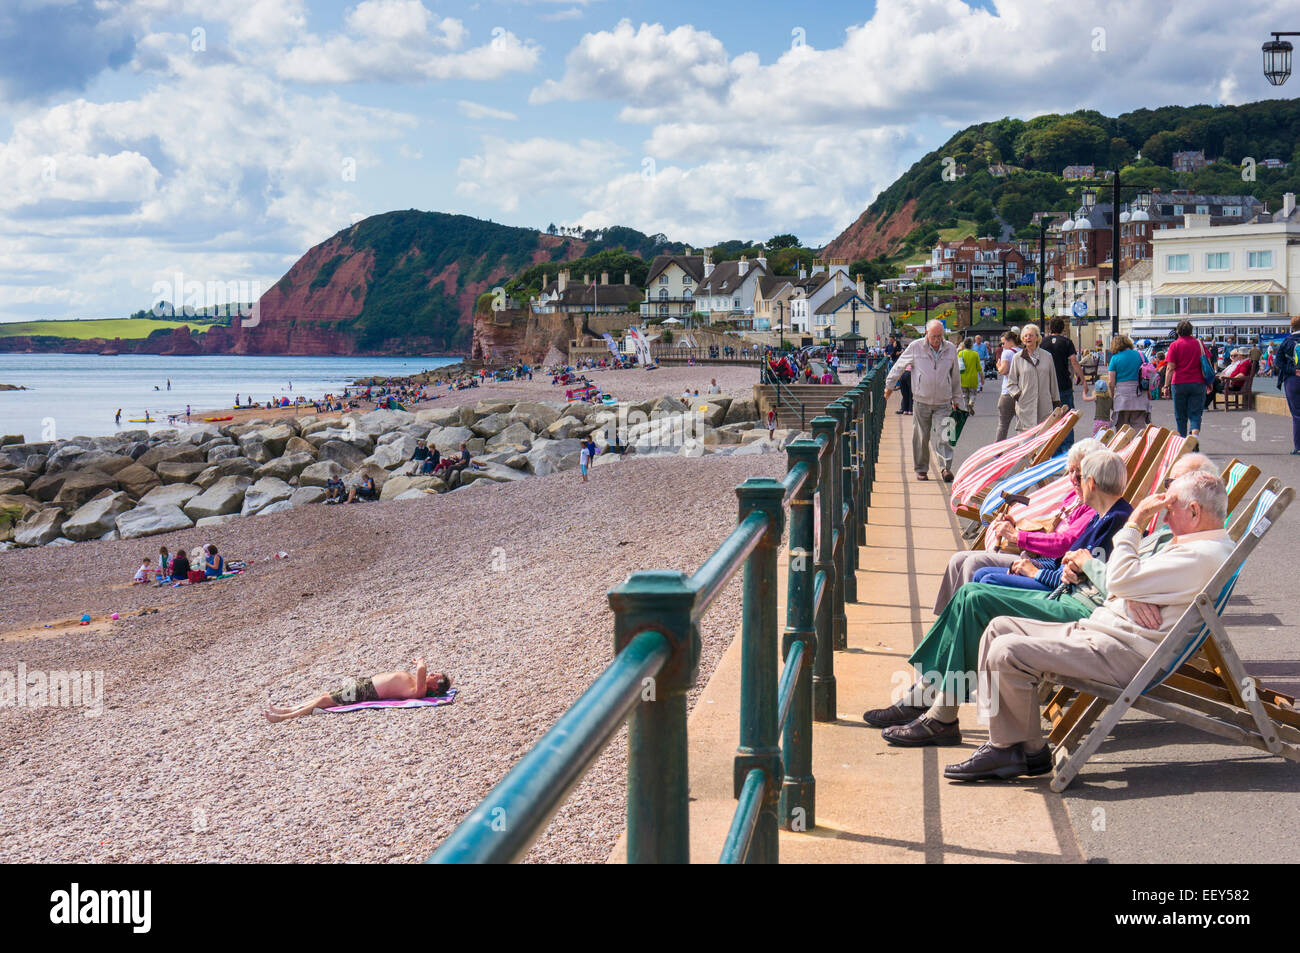 Persone sedute in sedie a sdraio sul lungomare a Sidmouth, East Devon, Inghilterra, Regno Unito Foto Stock